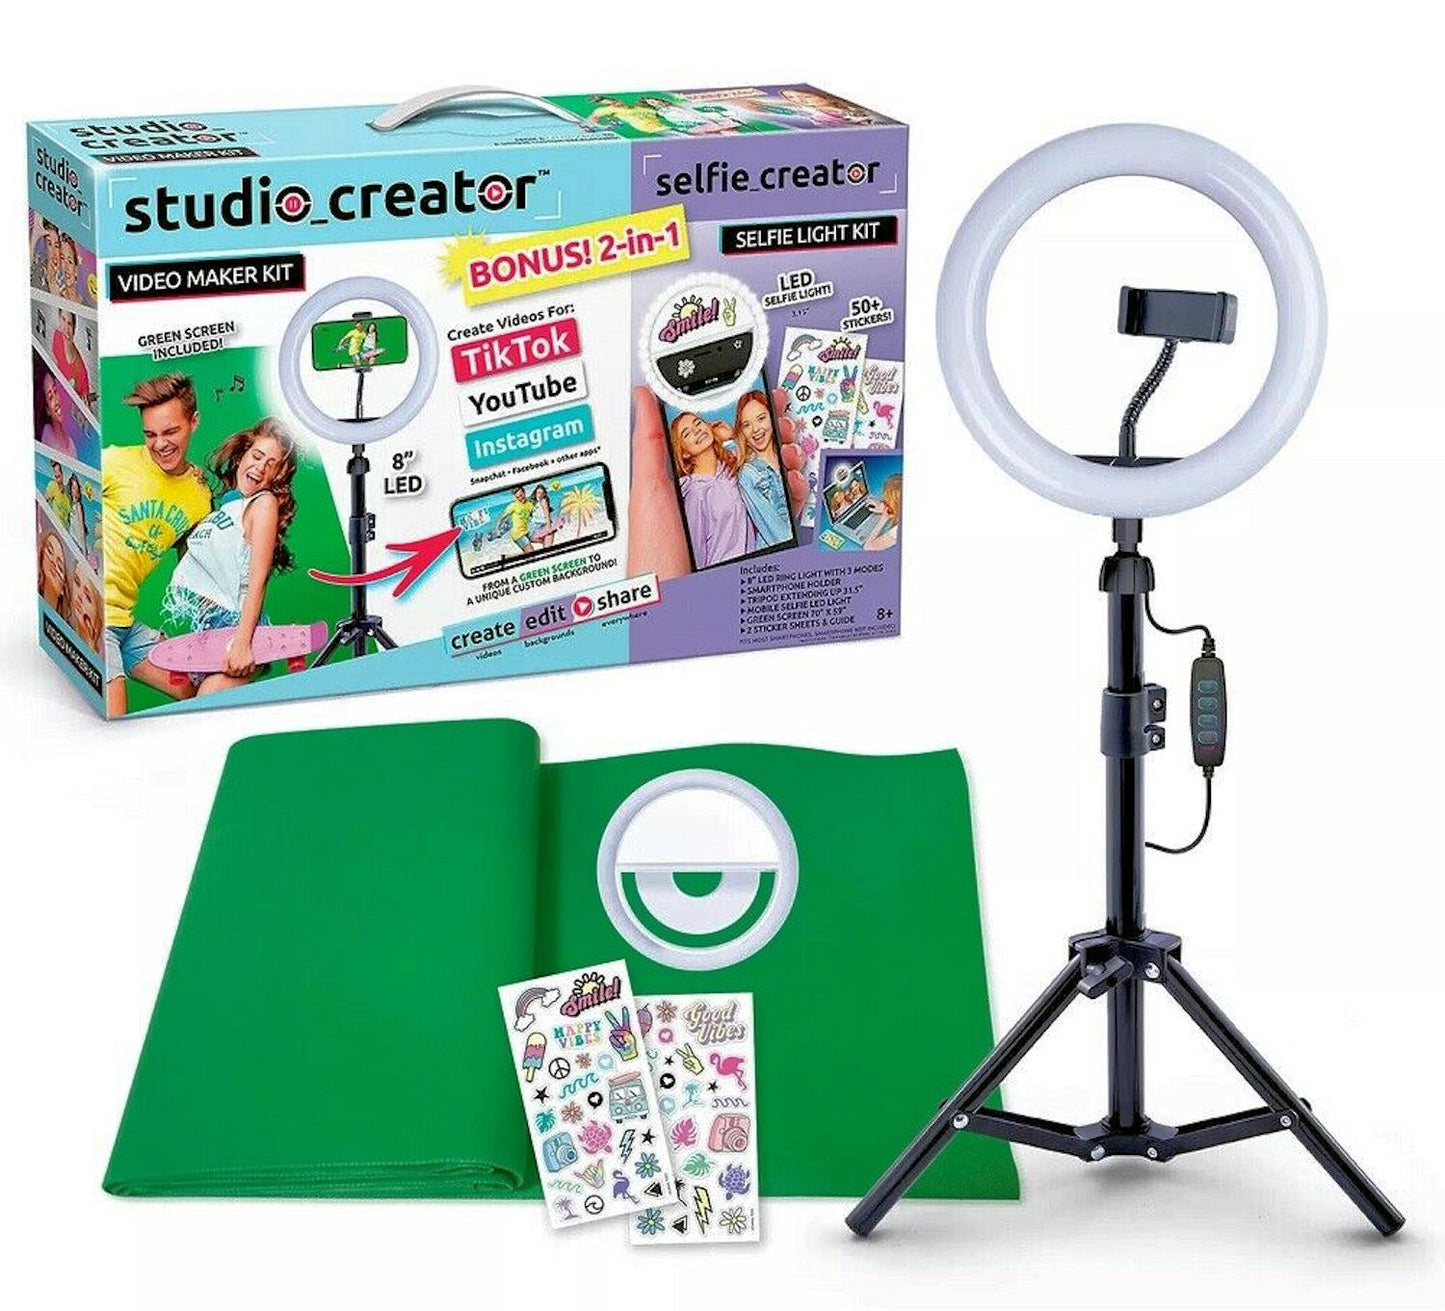 Studio Creator Video Maker Kit Bonus! 2-in-1 Selfie Light Kit